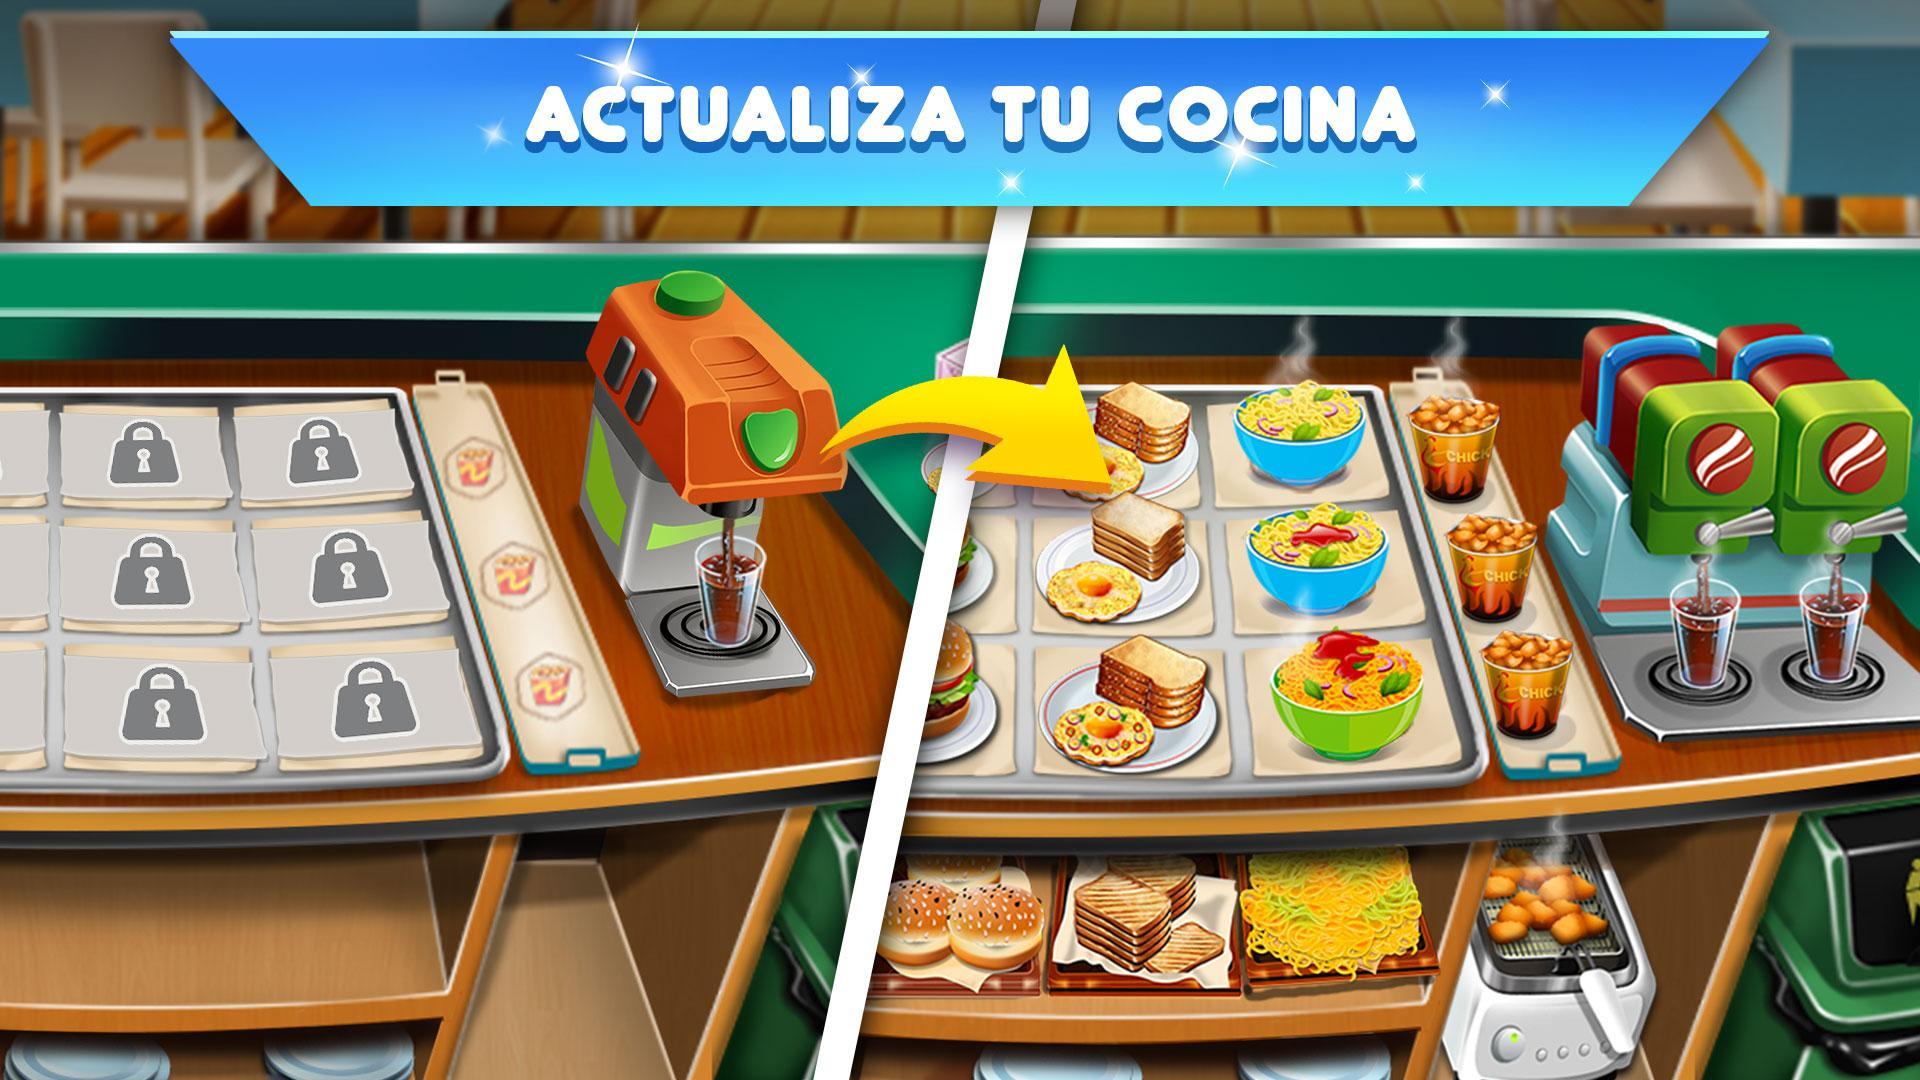 Festival De Cocina Juegos De Cocina Y Restaurante For Android Apk Download